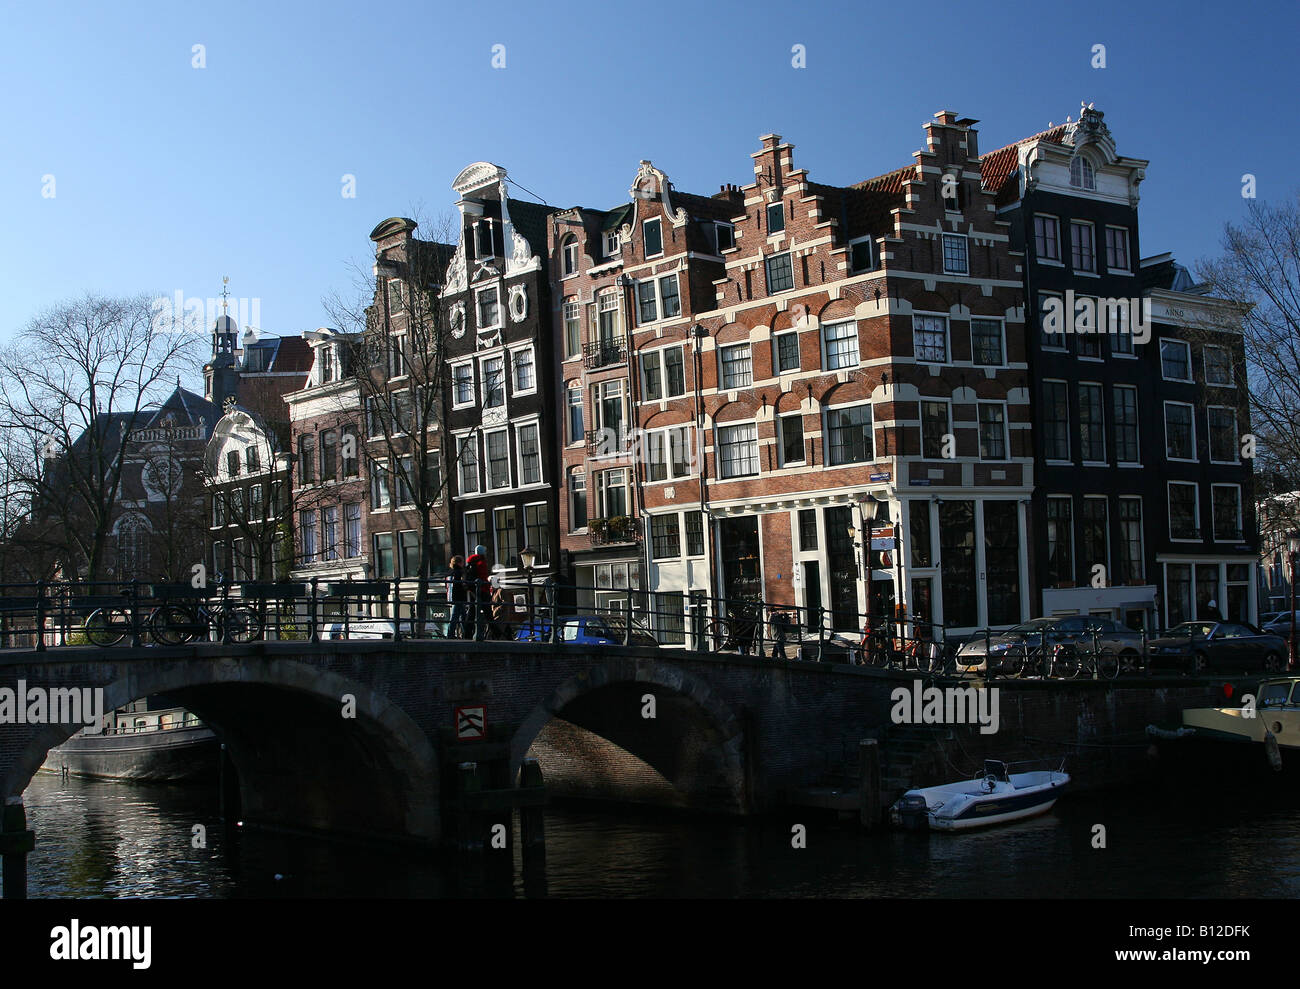 Typische Amsterdamer Häuser an der Brouwersgracht im Zentrum Amsterdams Stockfoto